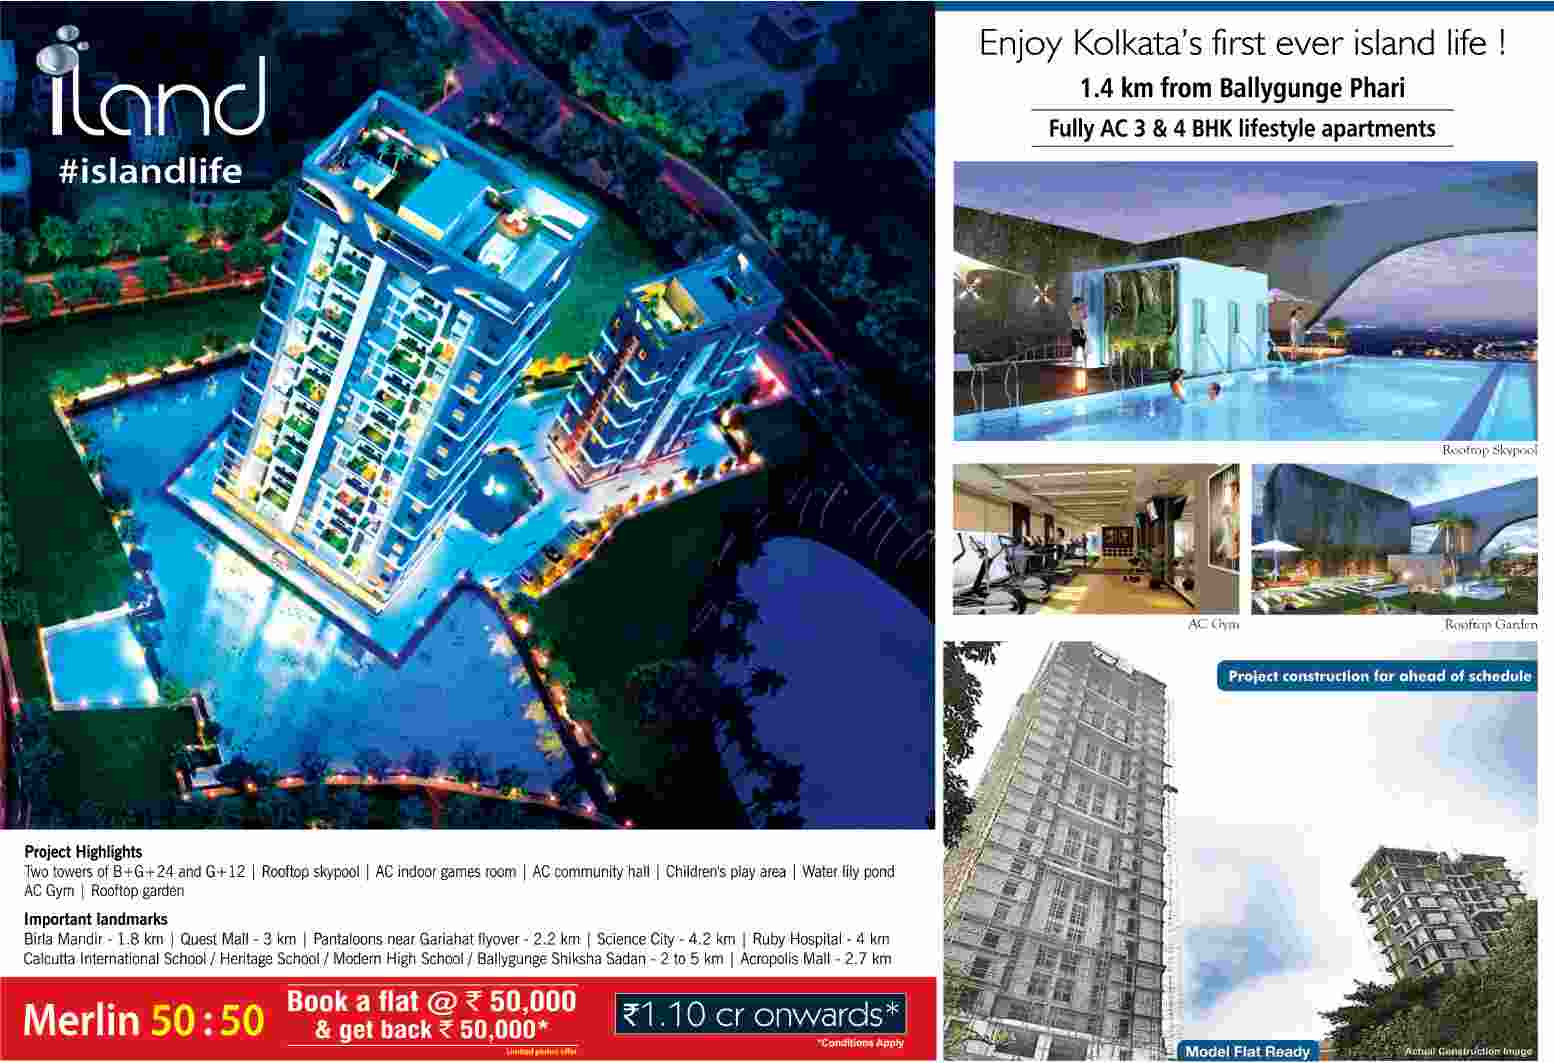 Enjoy Kolkata's first ever island life at PS Merlin iland